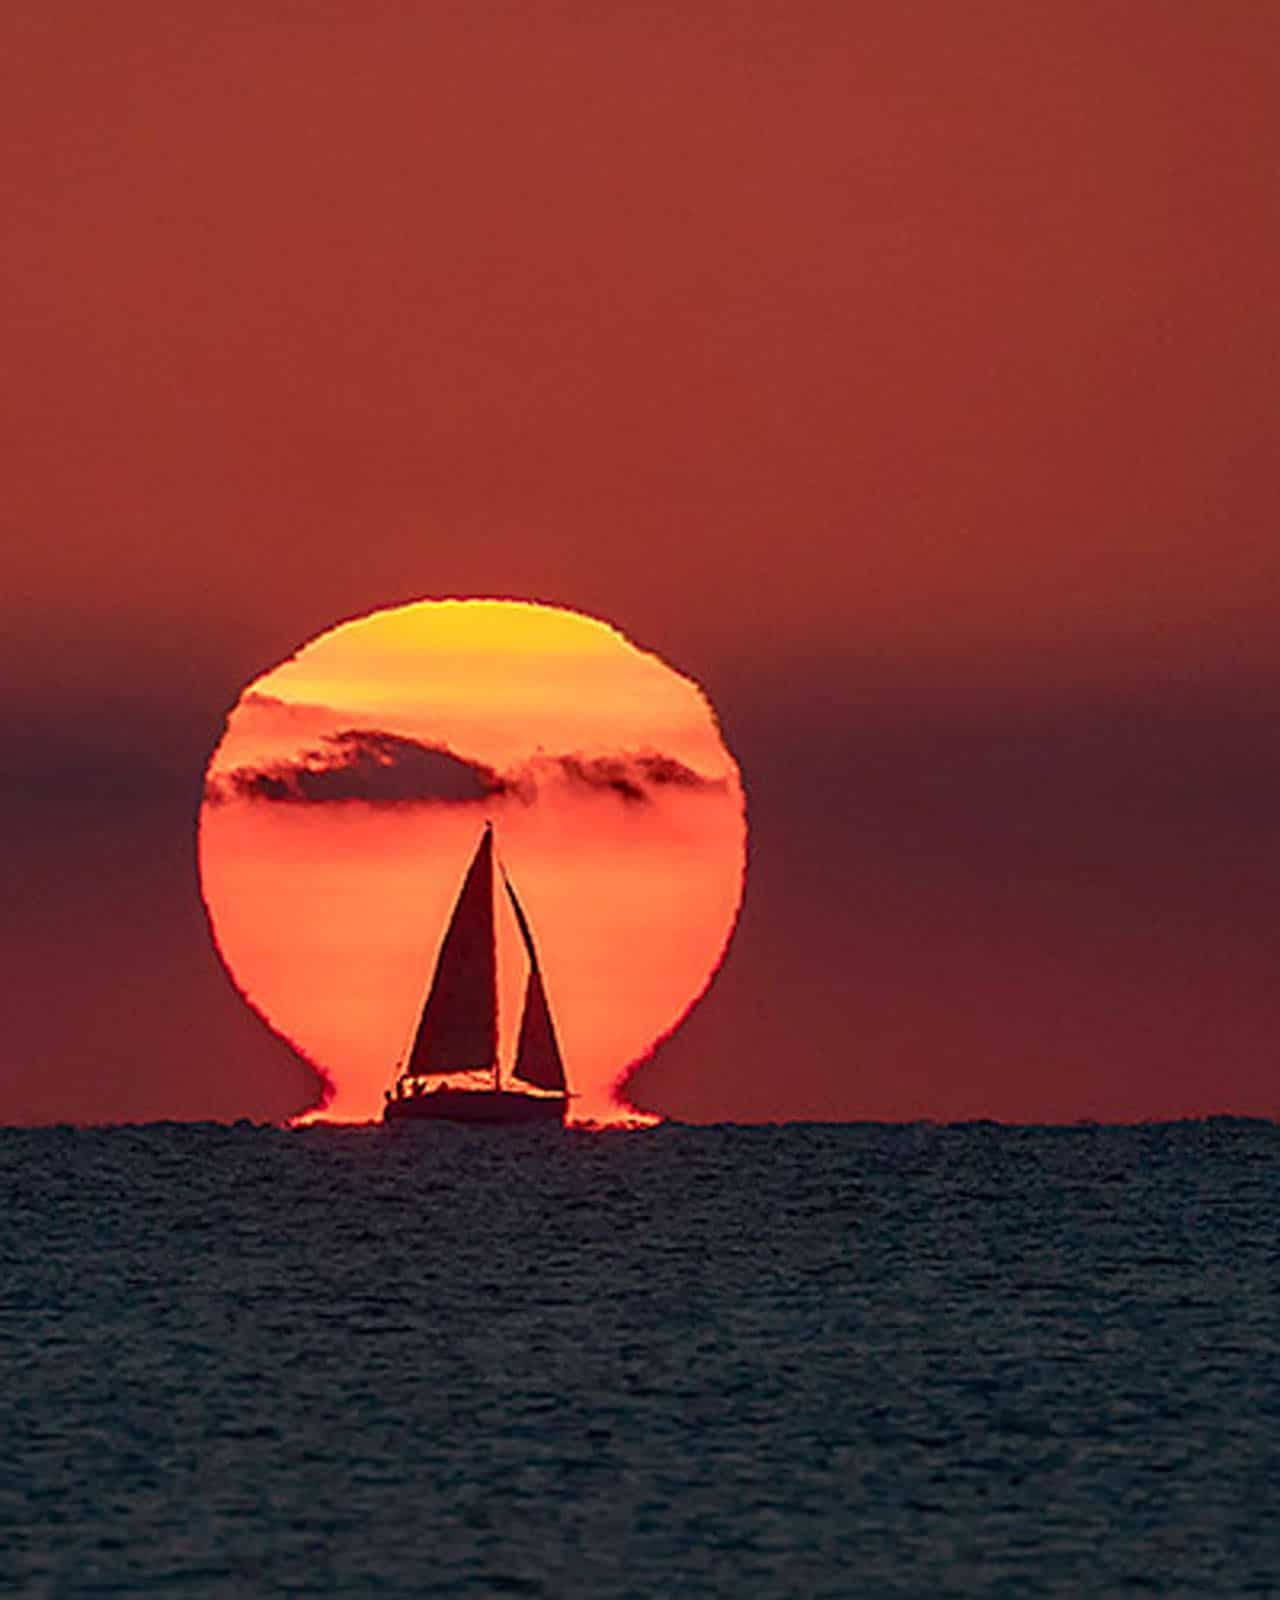 36 bức ảnh tuyệt đẹp về Mặt Trời, Mặt Trăng và Dải Ngân Hà trong năm 2020 qua